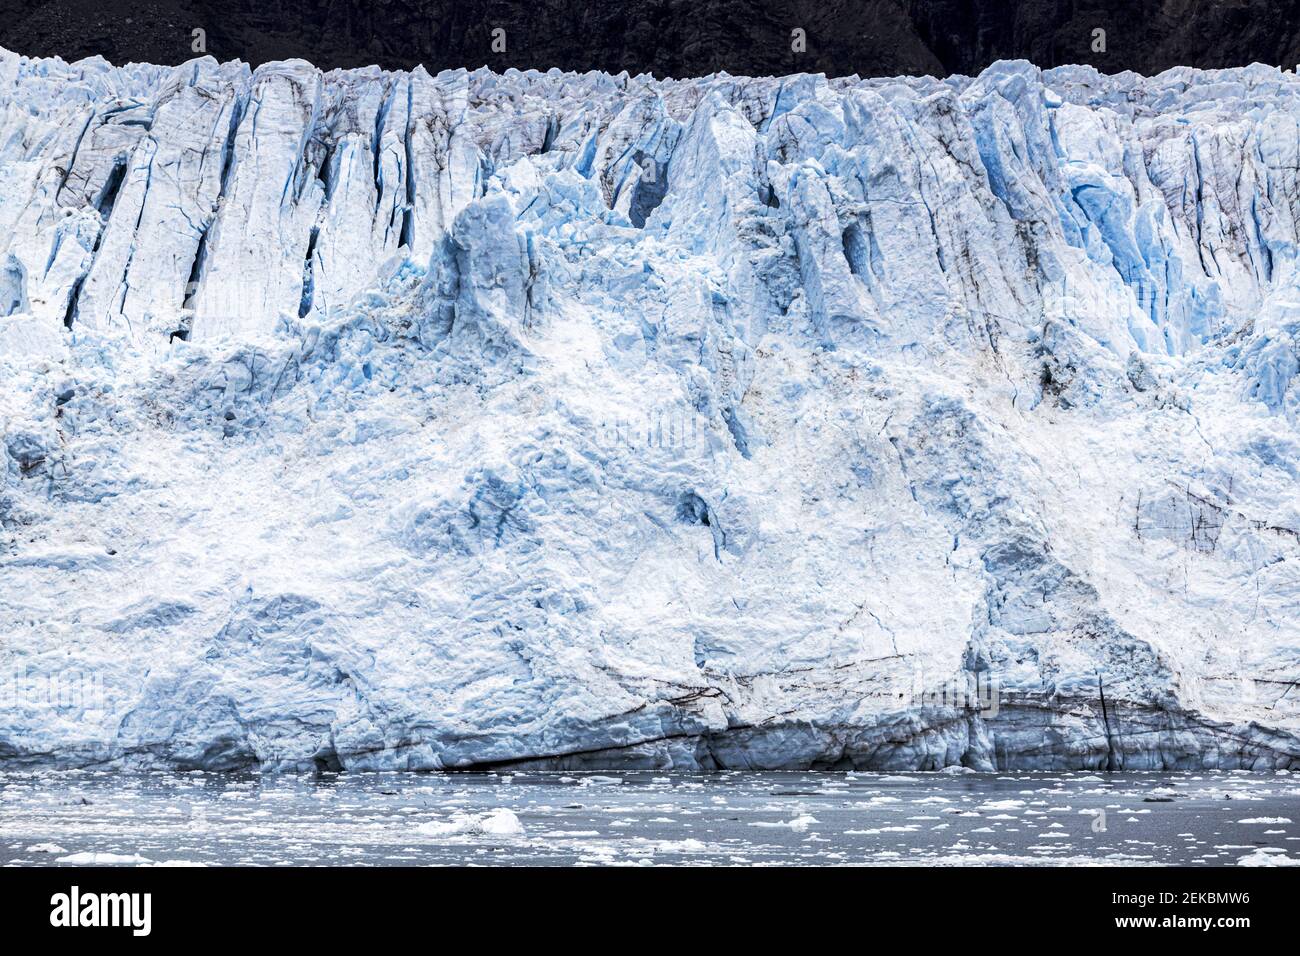 La cara rota del glaciar Margerie en la ensenada Tarr de Glacier Bay, Alaska, Estados Unidos Foto de stock